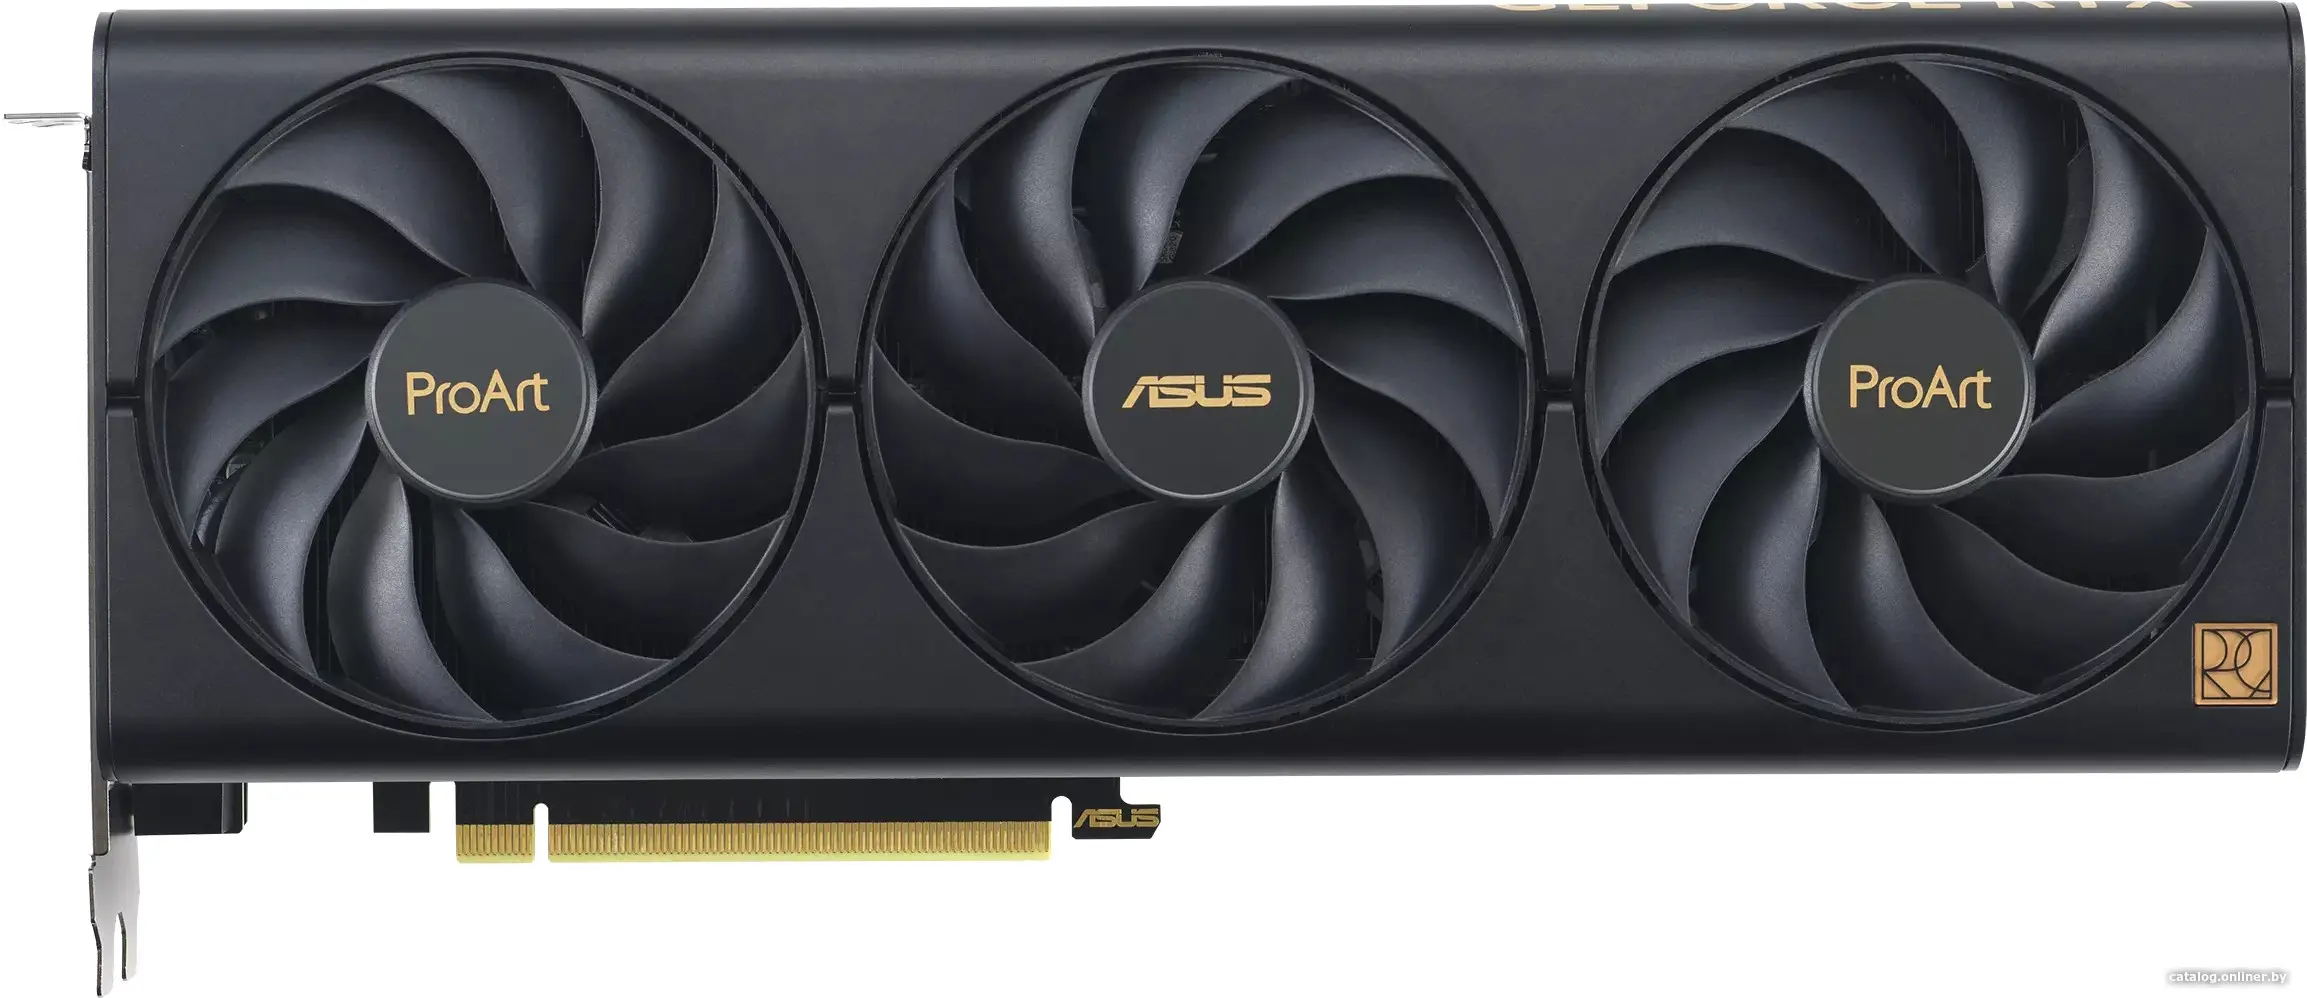 Купить Видеокарта ASUS Nvidia GeForce PROART-RTX4060-O8G, цена, опт и розница